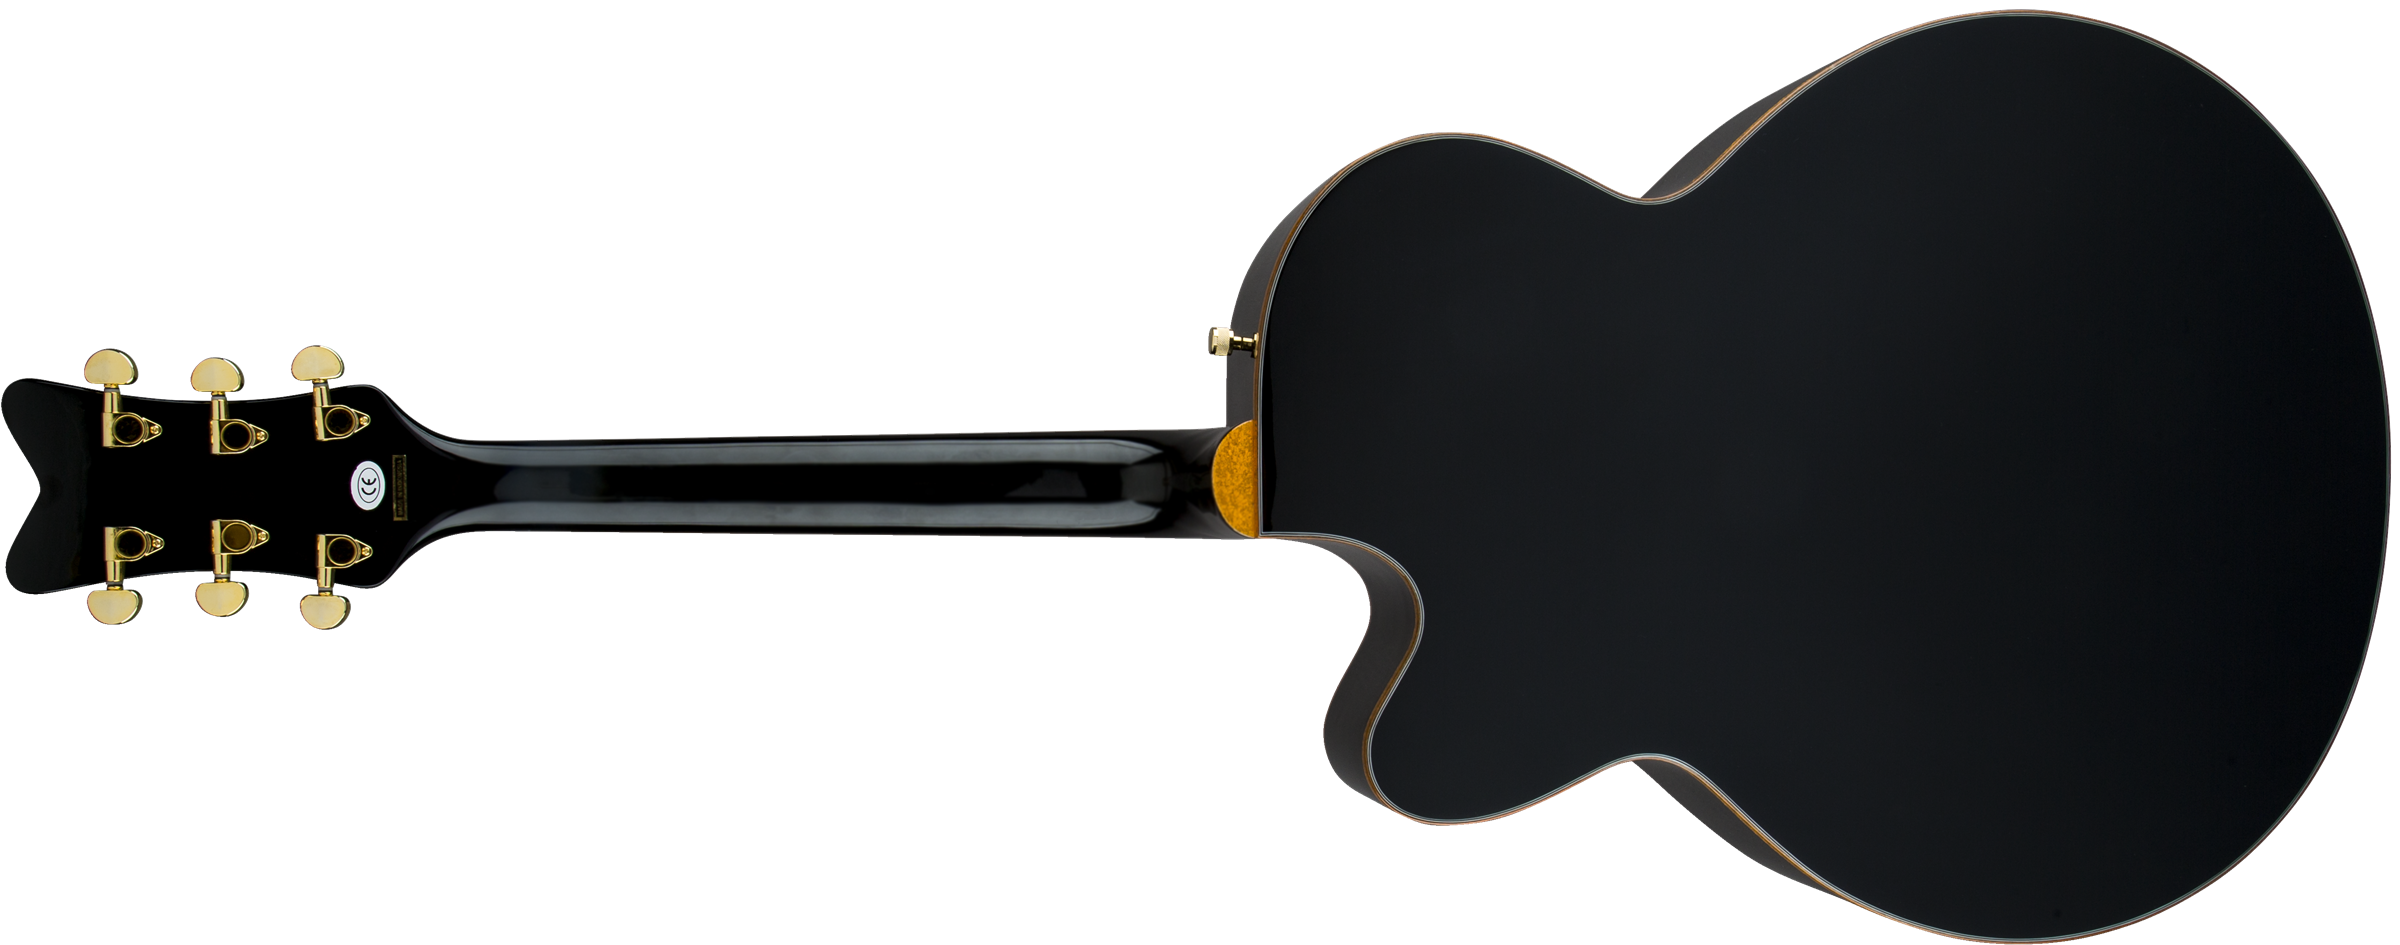 Gretsch G5022cbfe Rancher Falcon Jumbo Cw Epicea Erable Rw - Black - Electro acoustic guitar - Variation 2